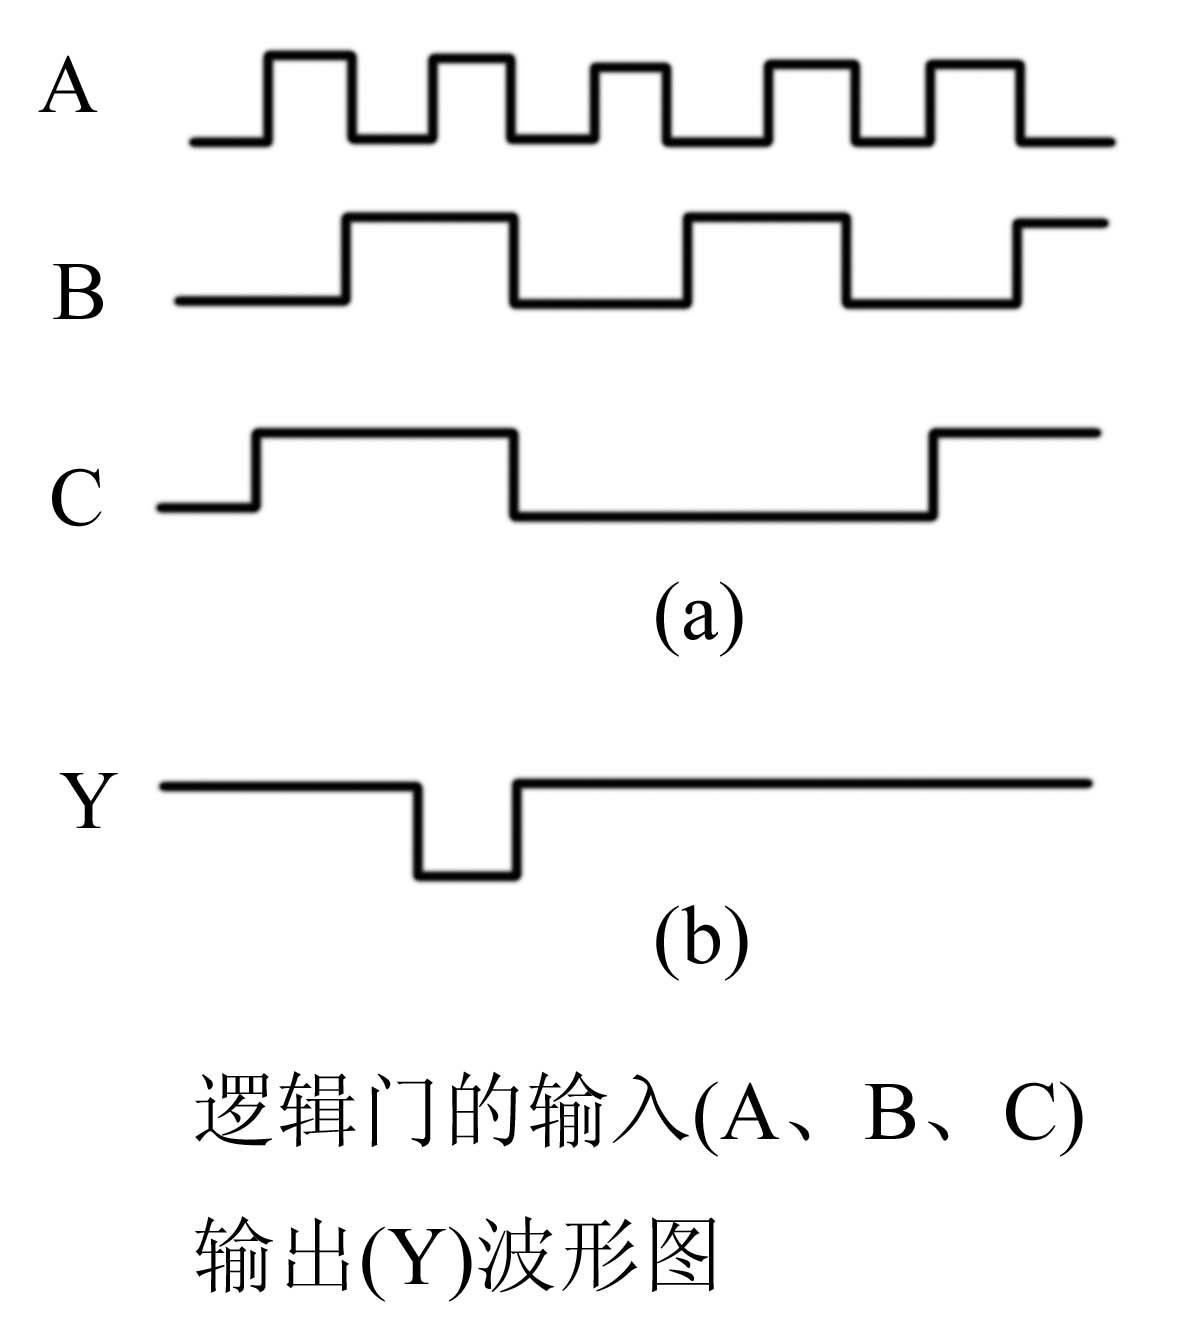  对逻辑函数Y=A + B+ C+B 利用代入规则，令A=BC代入，得Y= BC + B+ C+B = C+B 成立。CMOS门电路可以把输出端并联使用以实现“线与”逻辑。组合逻辑电路中的竞争-冒险是由于（  ）引起的。A:对 B:错 答案第12张